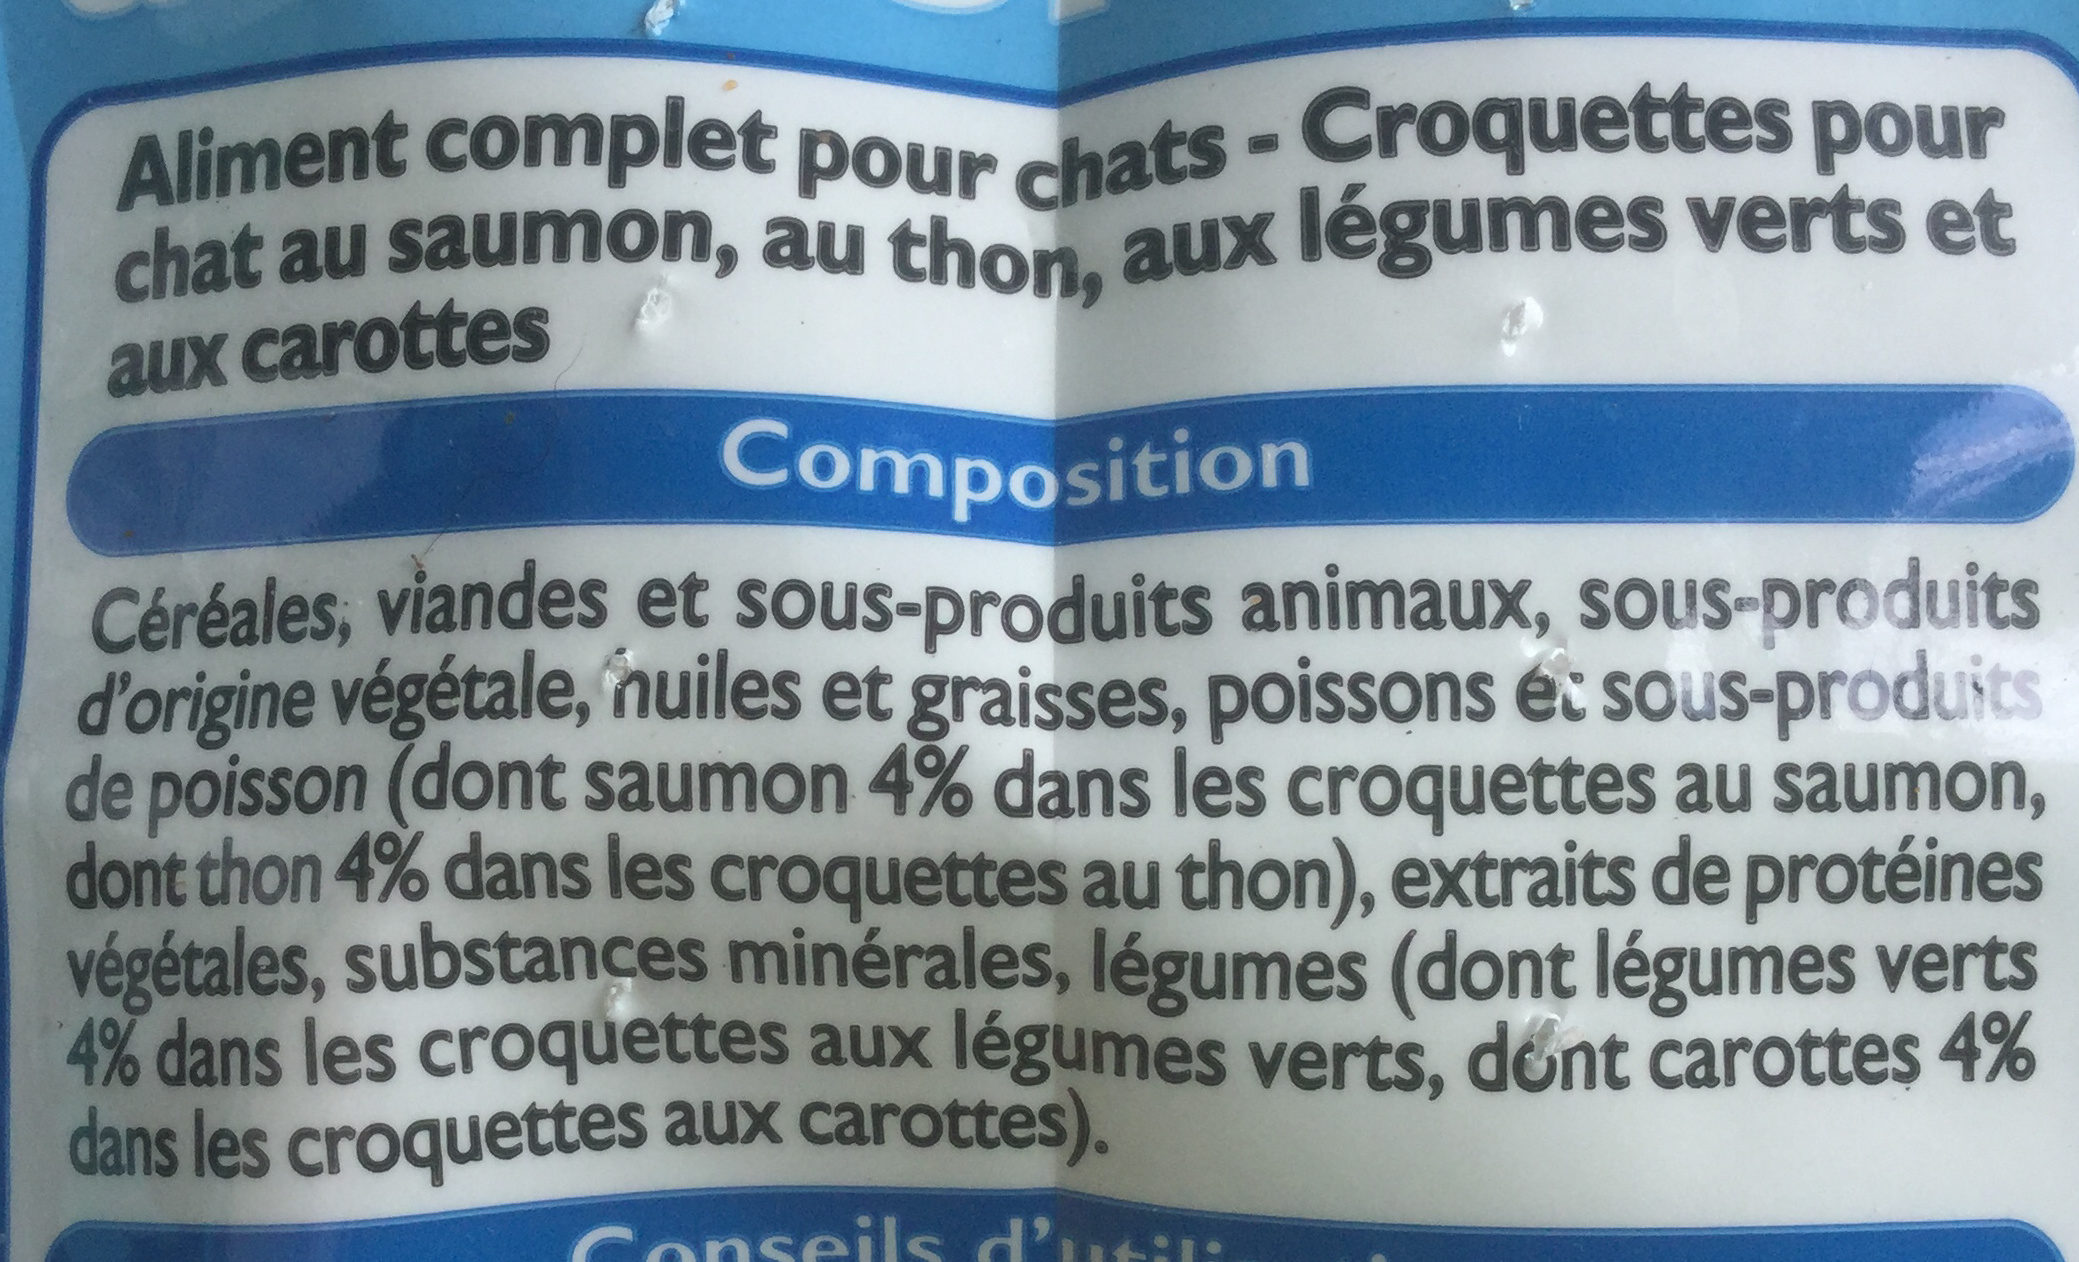 Croquettes saumon thon - Ingrédients - fr